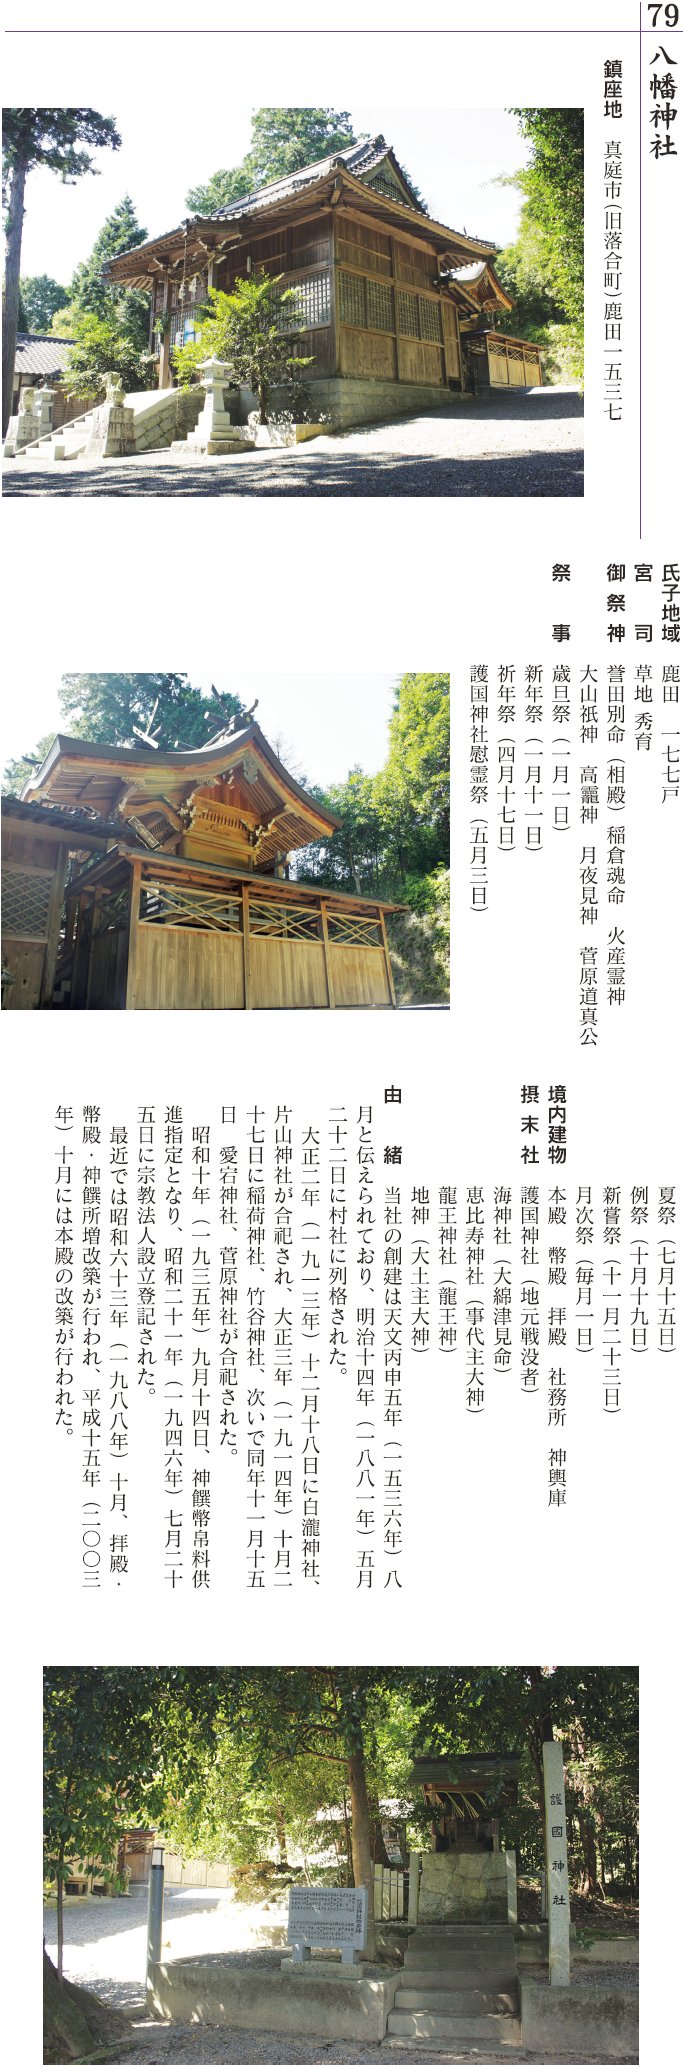 79 鹿田八幡神社